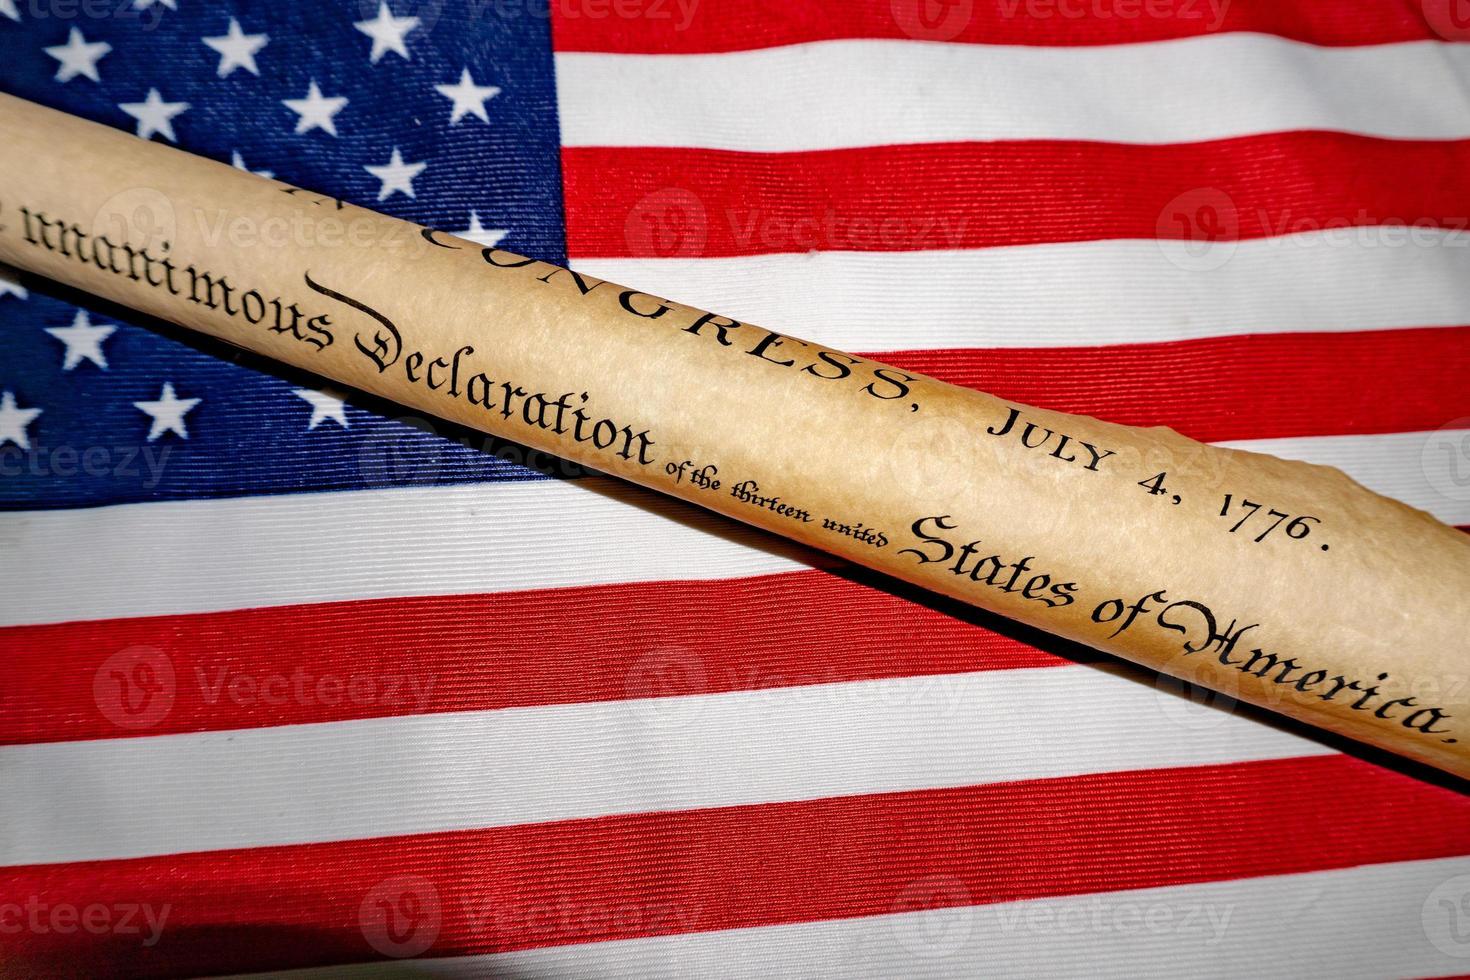 déclaration d'indépendance du 4 juillet 1776 sur le drapeau américain photo